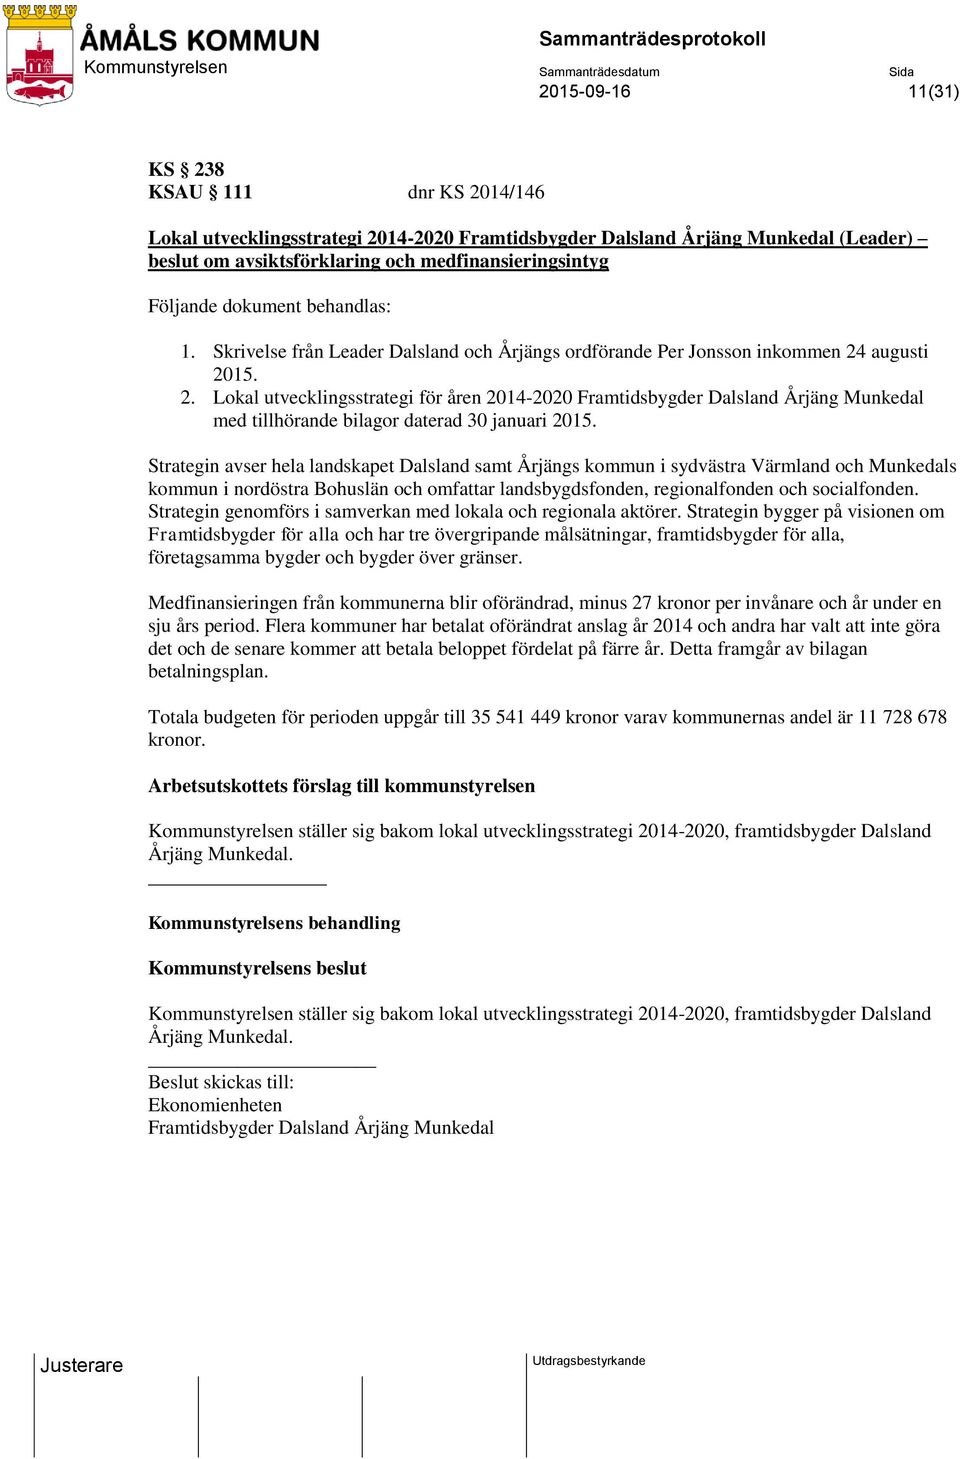 augusti 2015. 2. Lokal utvecklingsstrategi för åren 2014-2020 Framtidsbygder Dalsland Årjäng Munkedal med tillhörande bilagor daterad 30 januari 2015.